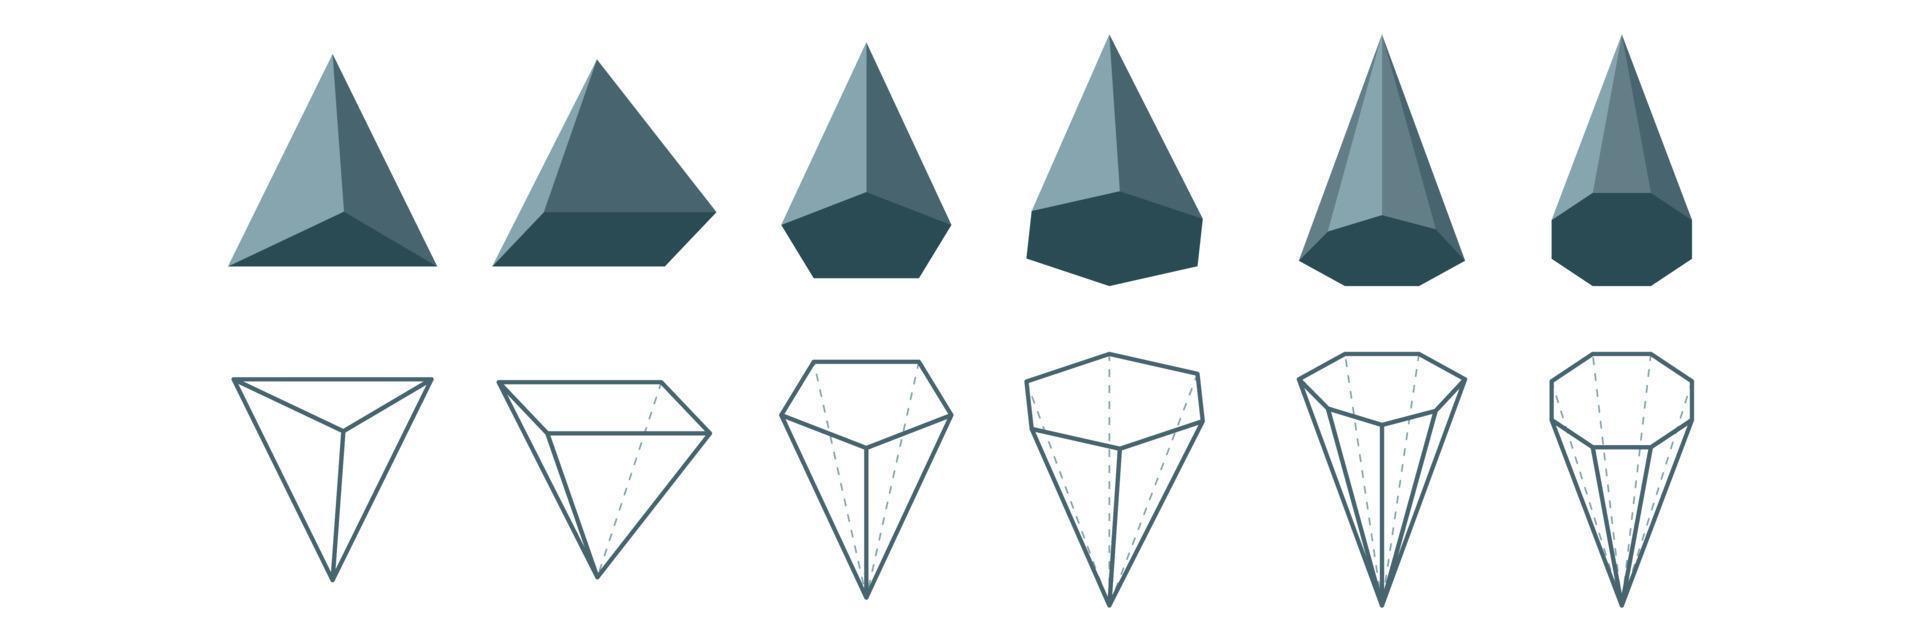 conjunto de tipos de pirámide. icono de línea y 3D. figuras geométricas matemáticas. poliedro. Pirámide poligonal triangular rectangular pentagonal hexagonal heptagonal octogonal. ilustración vectorial vector